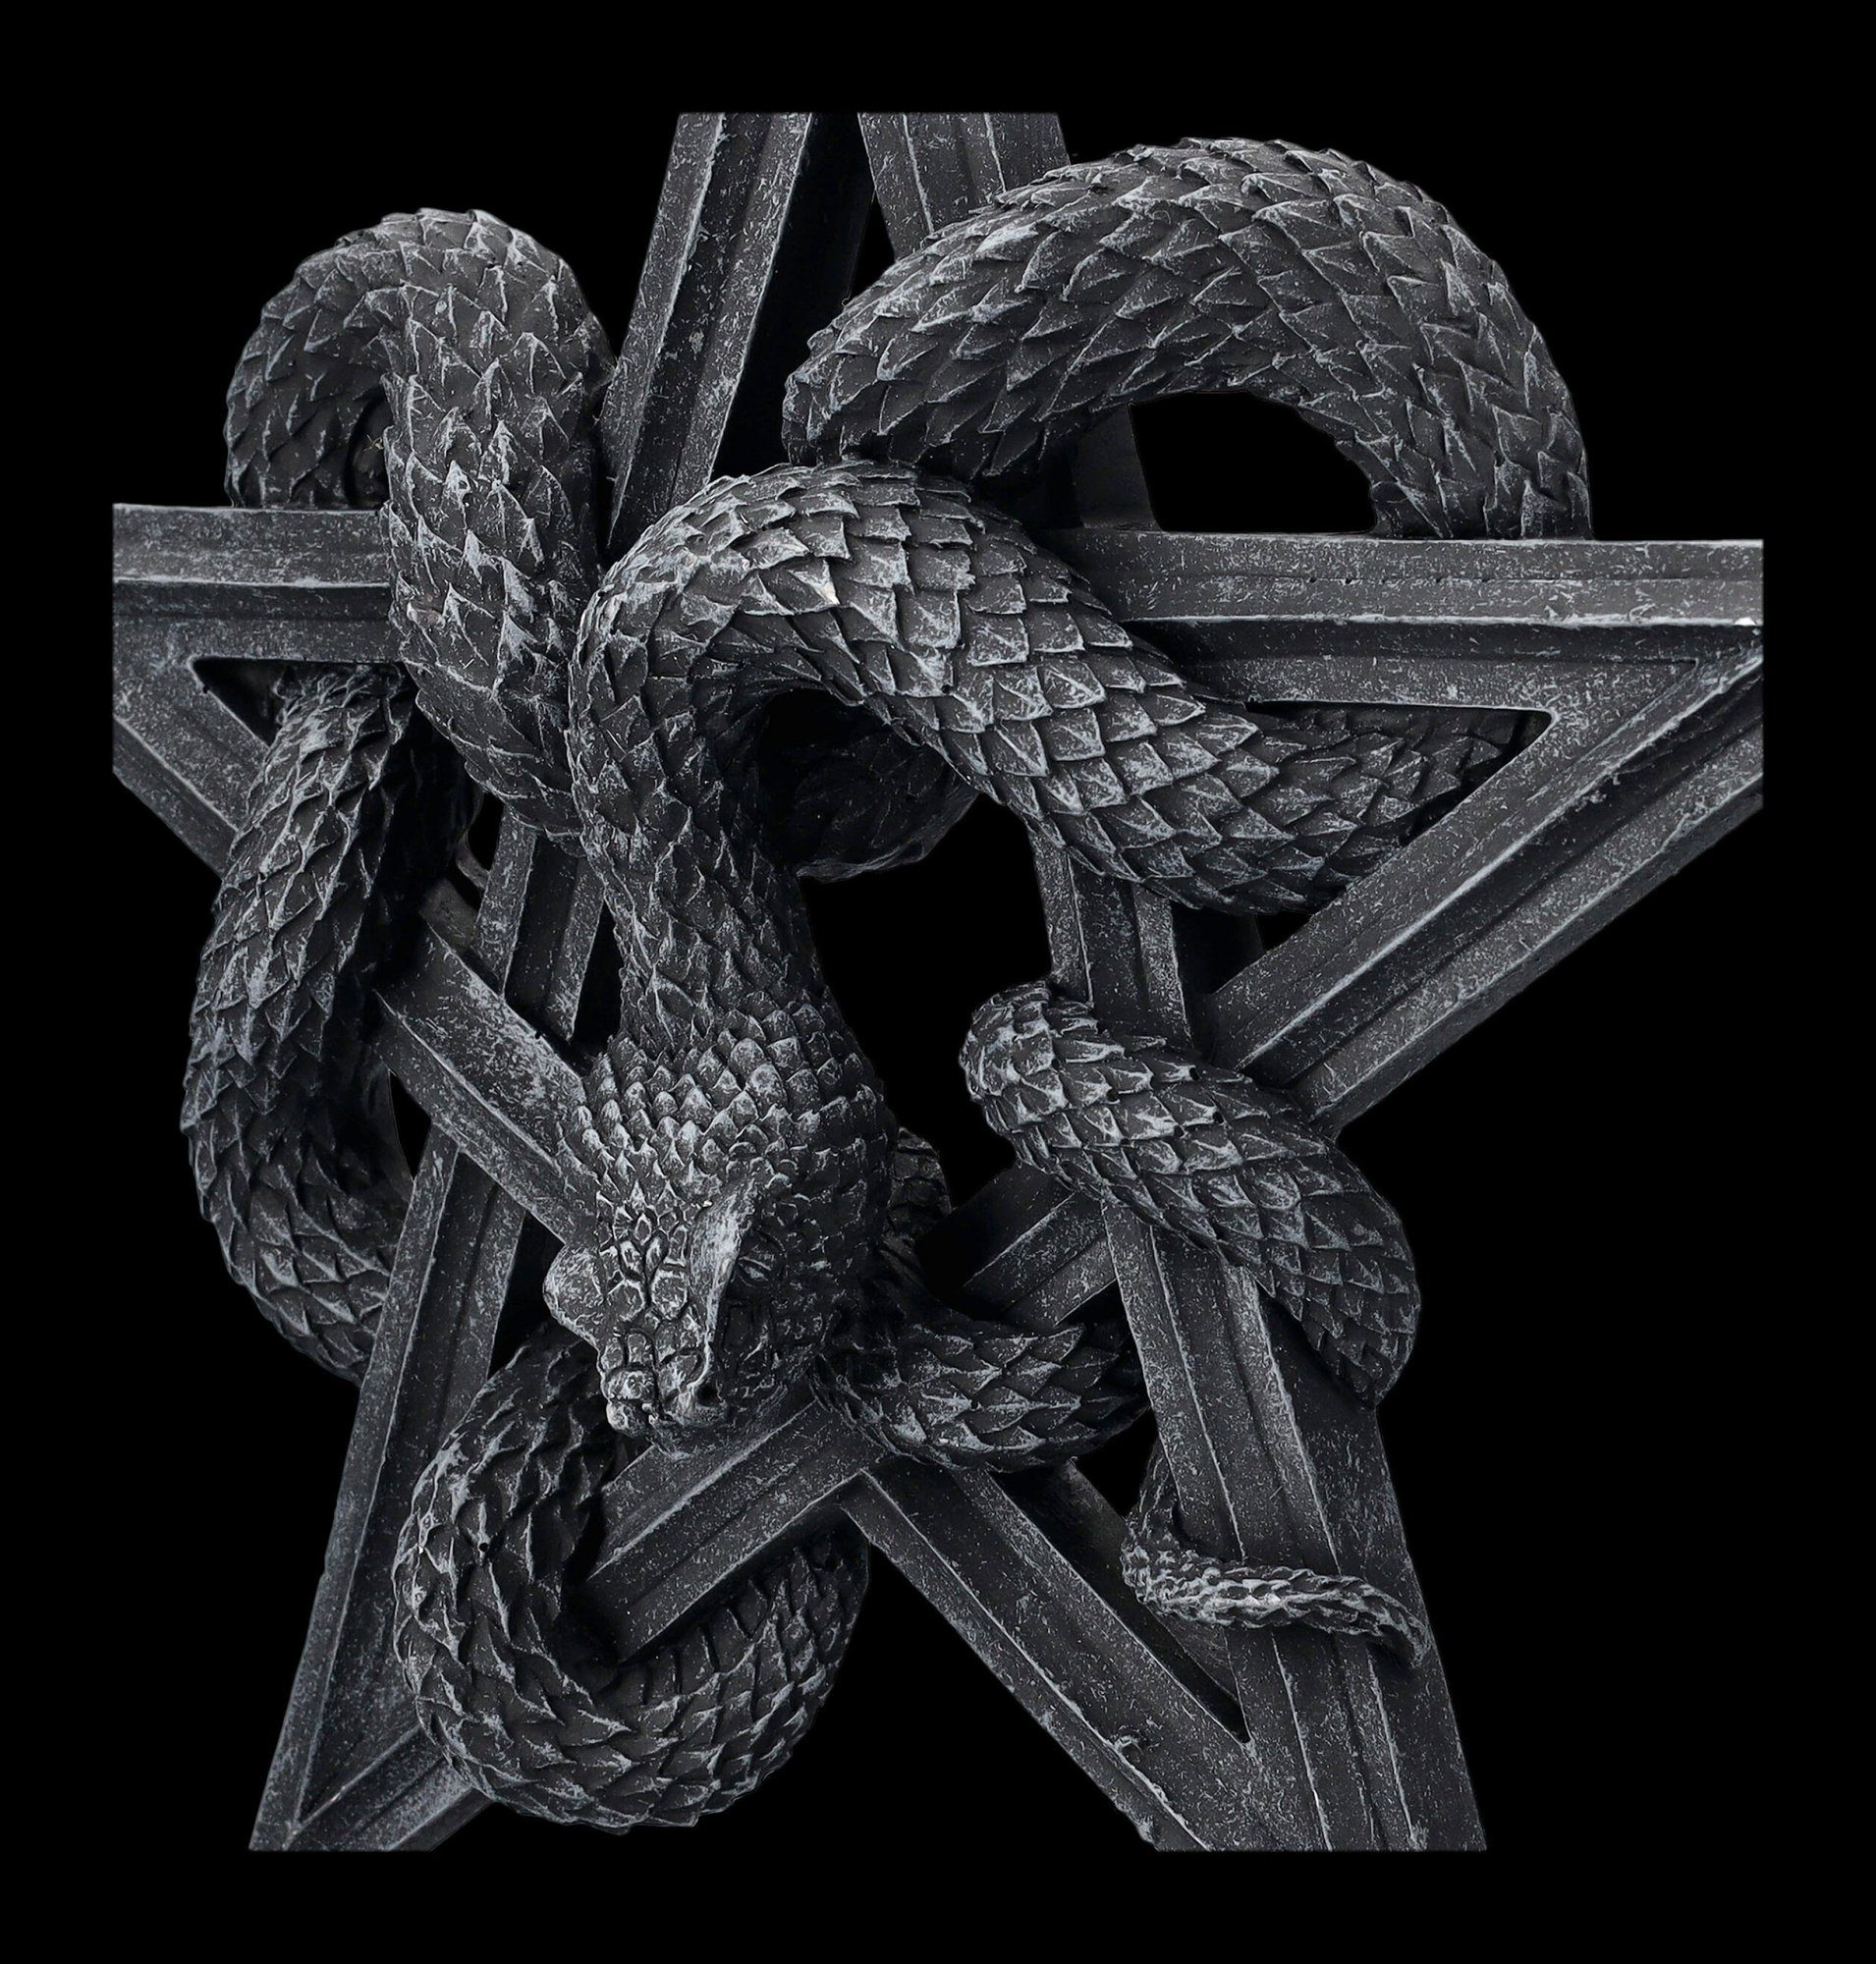 Worship Serpents Wanddekoobjekt mit Pentagramm Gothic - Wandrelief - Fantasy Shop Dekoration Schlangen Figuren GmbH